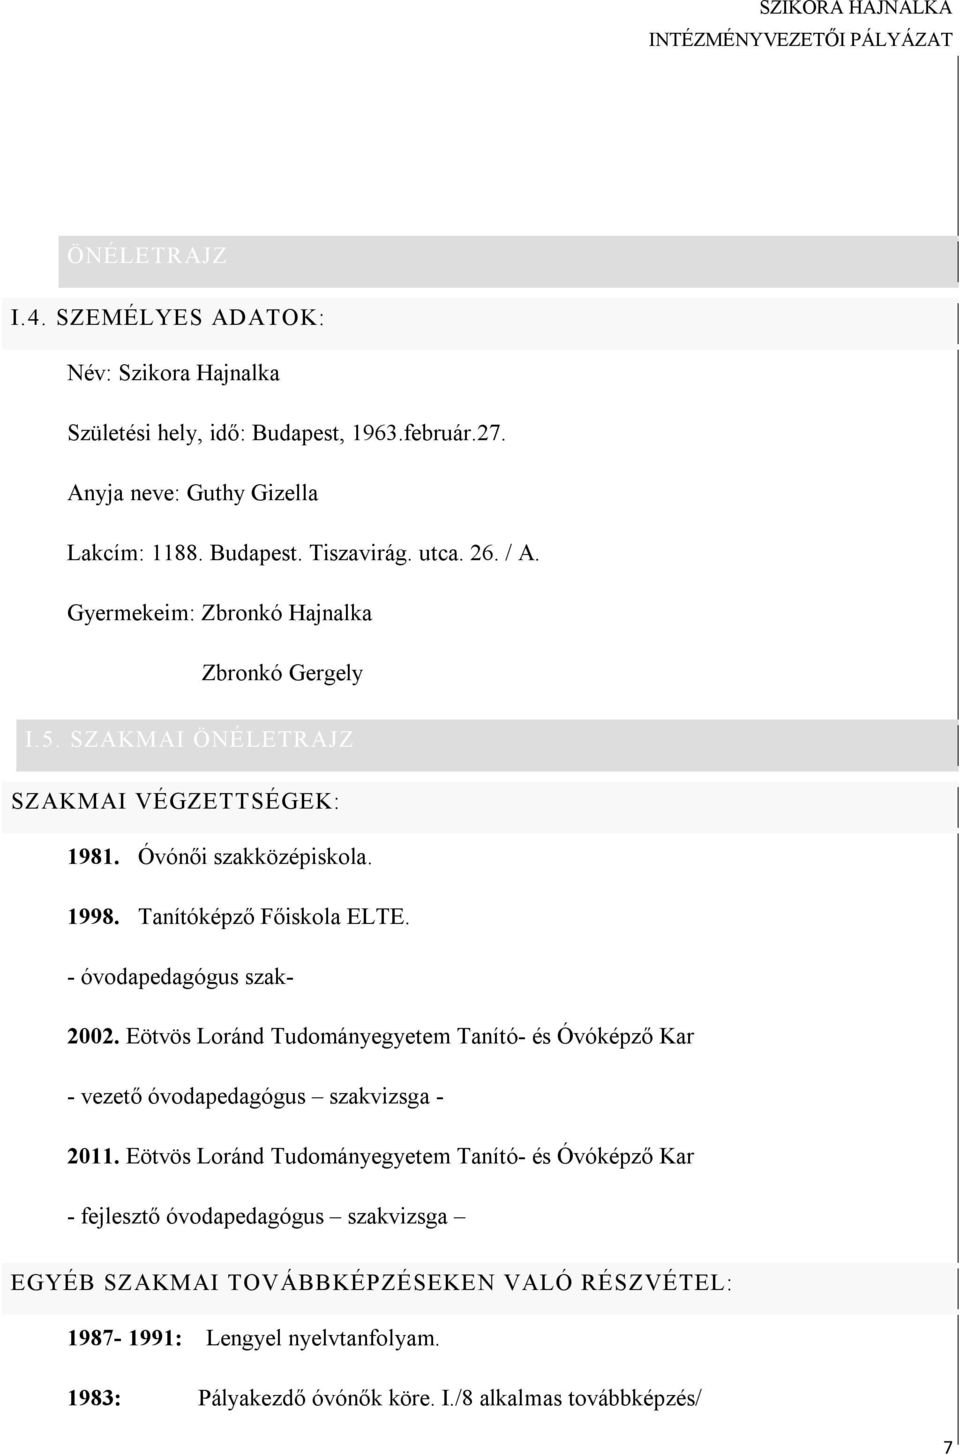 - óvodapedagógus szak- 2002. Eötvös Loránd Tudományegyetem Tanító- és Óvóképző Kar - vezető óvodapedagógus szakvizsga - 2011.